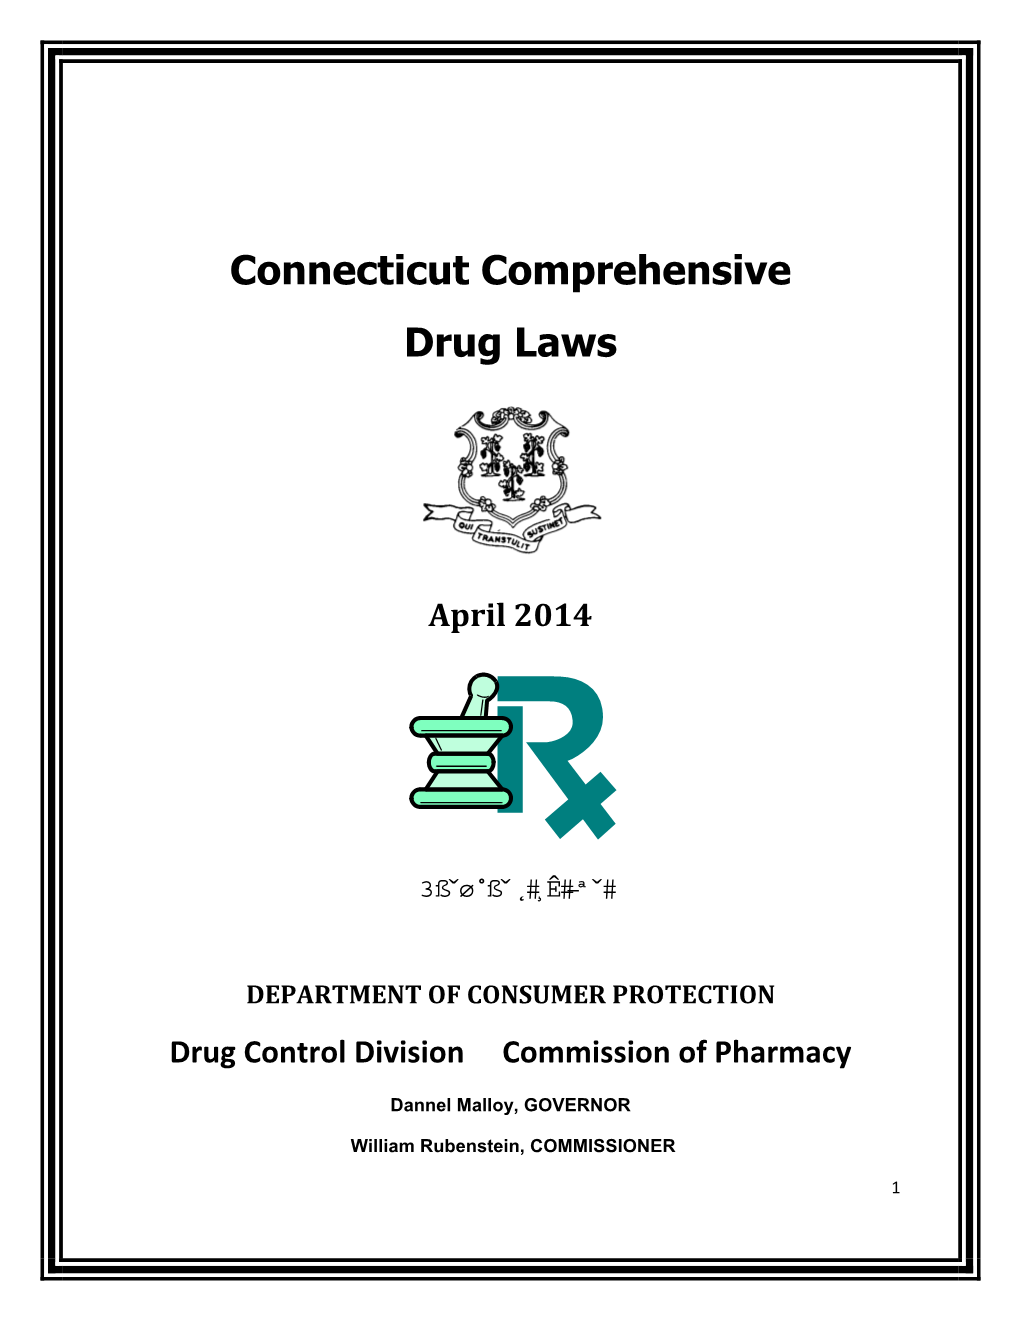 Connecticut Comprehensive Drug Laws